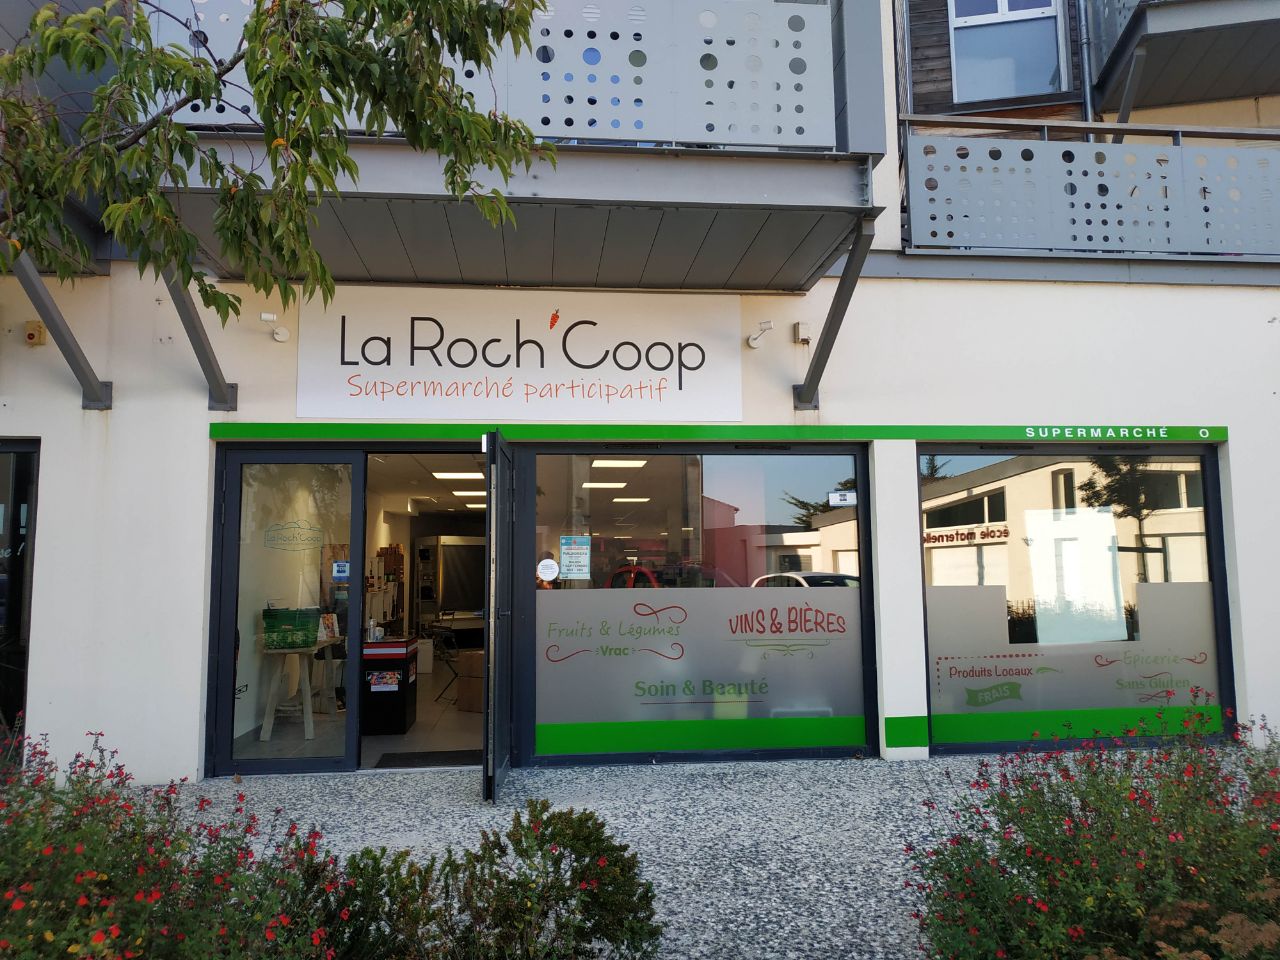 La Roch'Coop